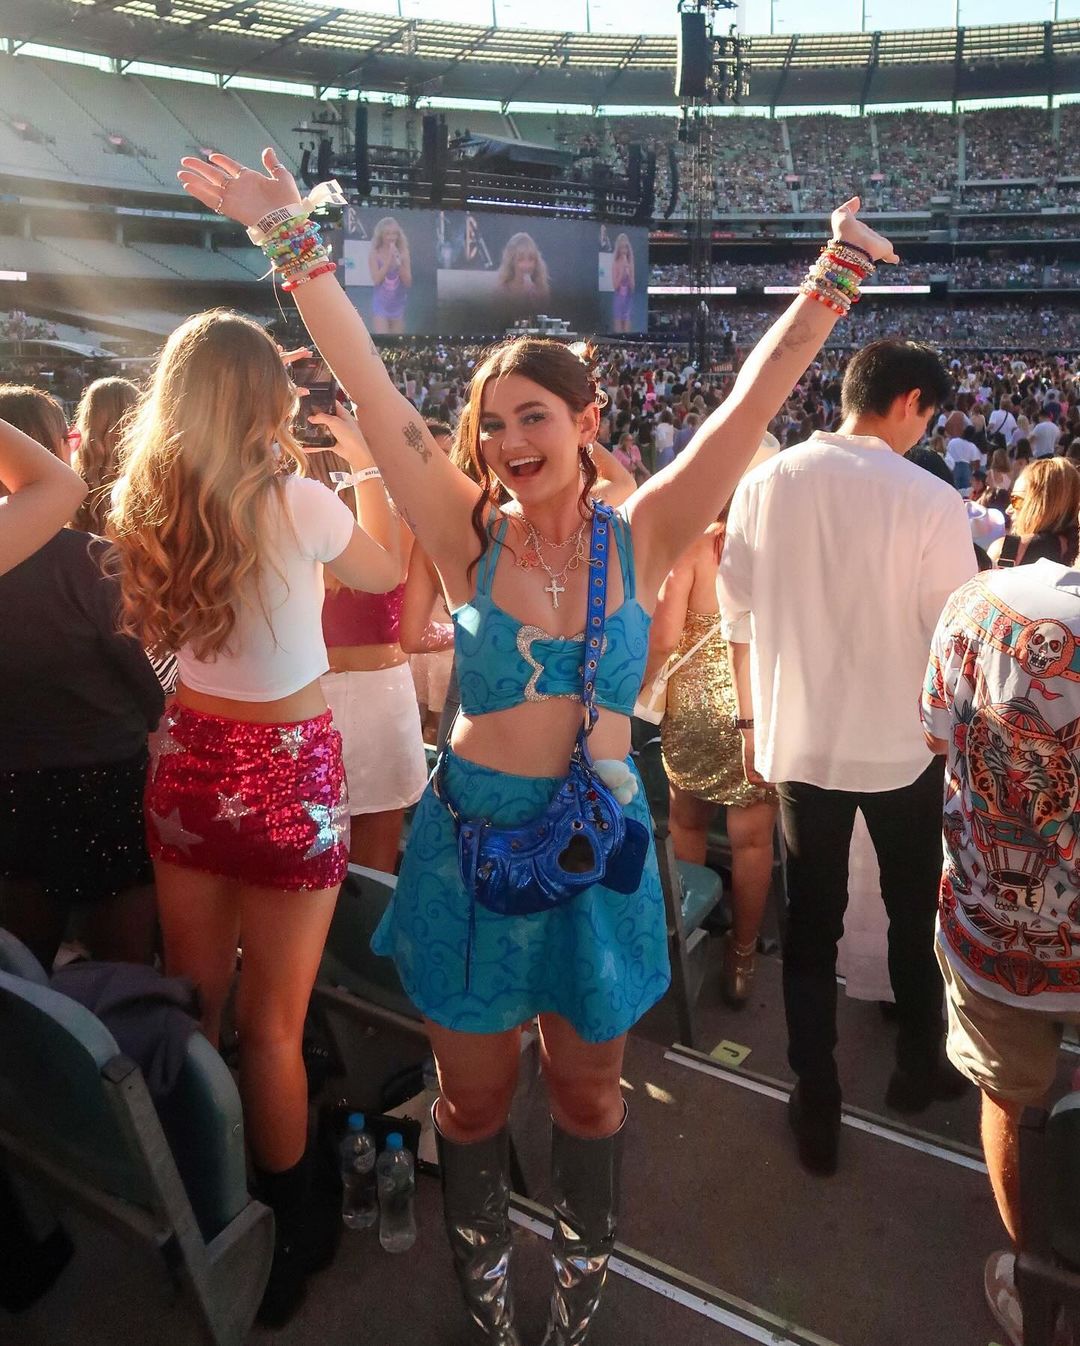 Una joven vestida con un lindo traje azul sonríe y levanta las manos en el aire en el estadio.